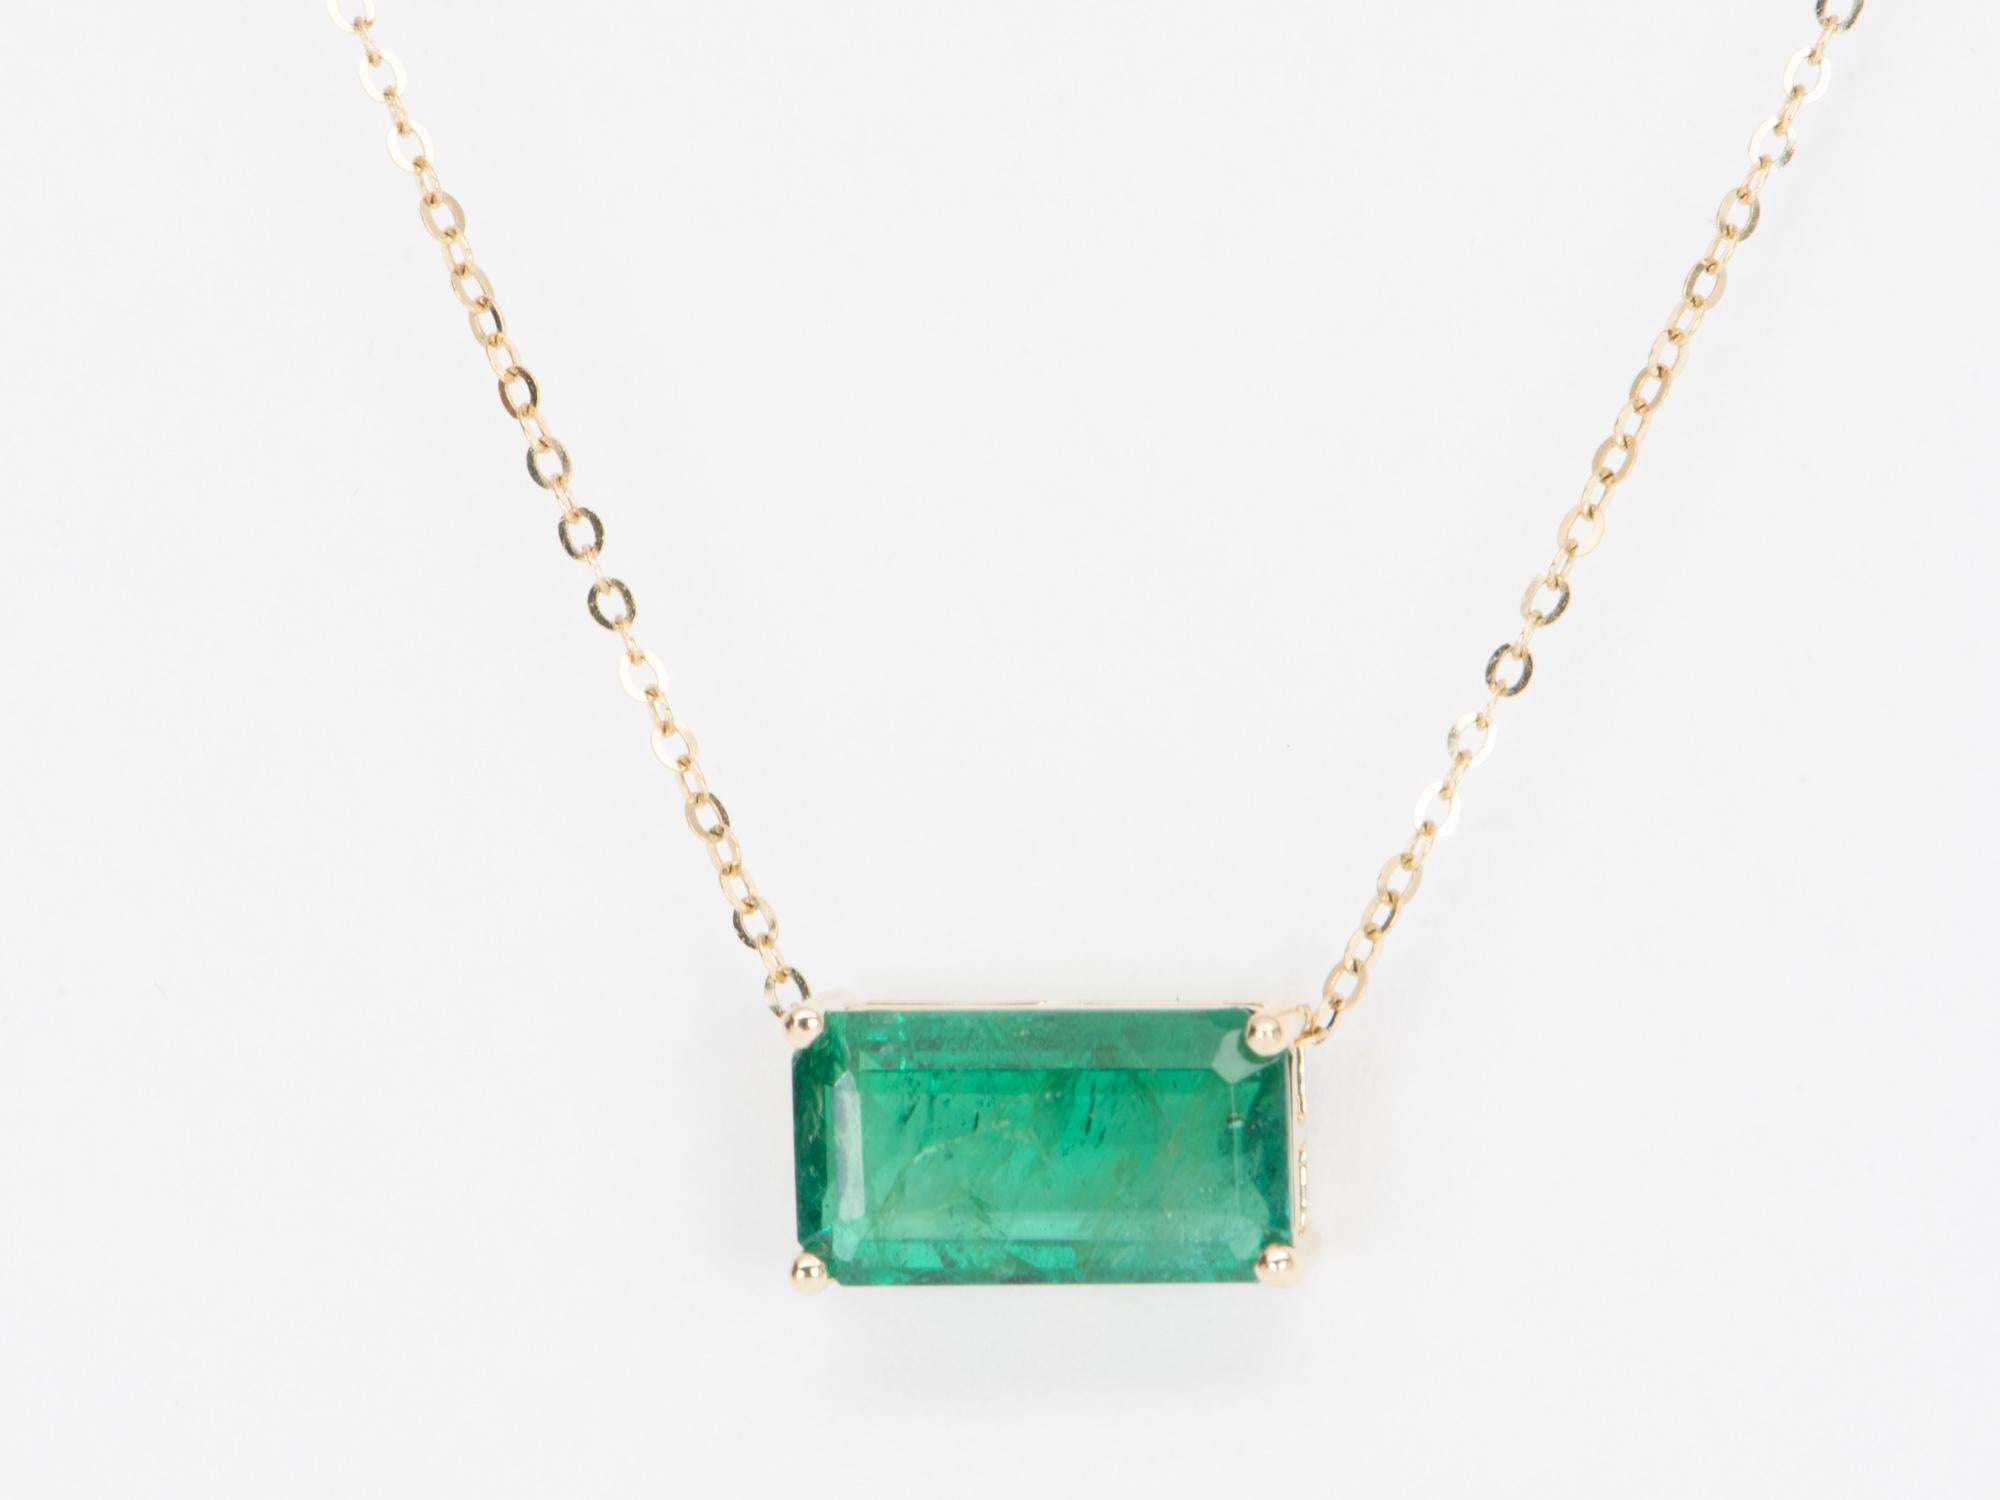 Diese elegante, zeitlose Halskette besticht durch einen sattgrünen sambischen Smaragd von 3,76 Karat, der den Mittelpunkt des Designs bildet. Der Smaragd ist in ein klassisches Zackenmuster gefasst, das vertikal oder horizontal an der Kette getragen